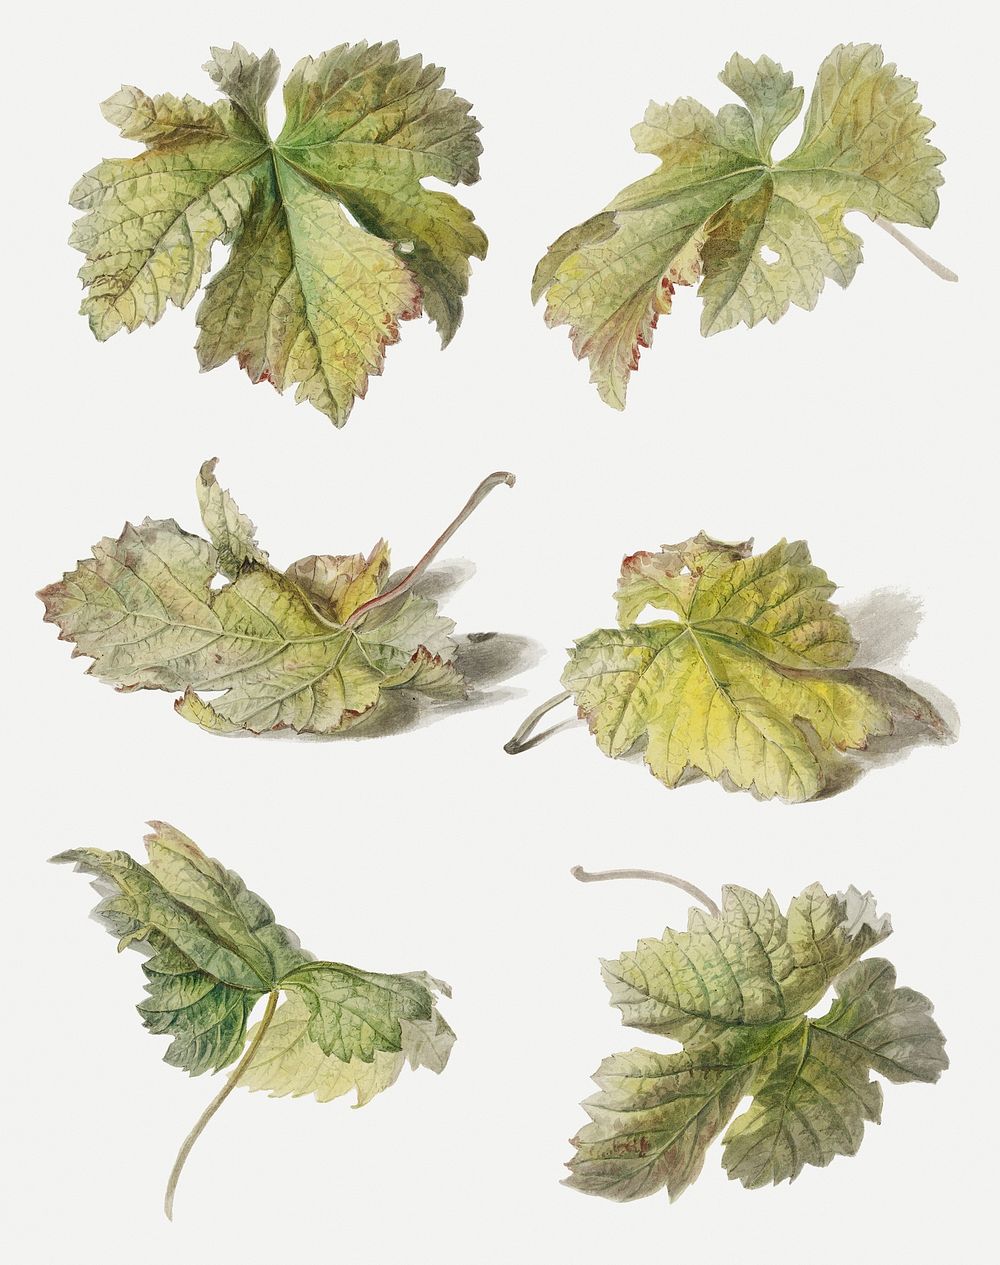 Vintage leaf botanical illustration psd set, remix from artworks by Willem van Leen